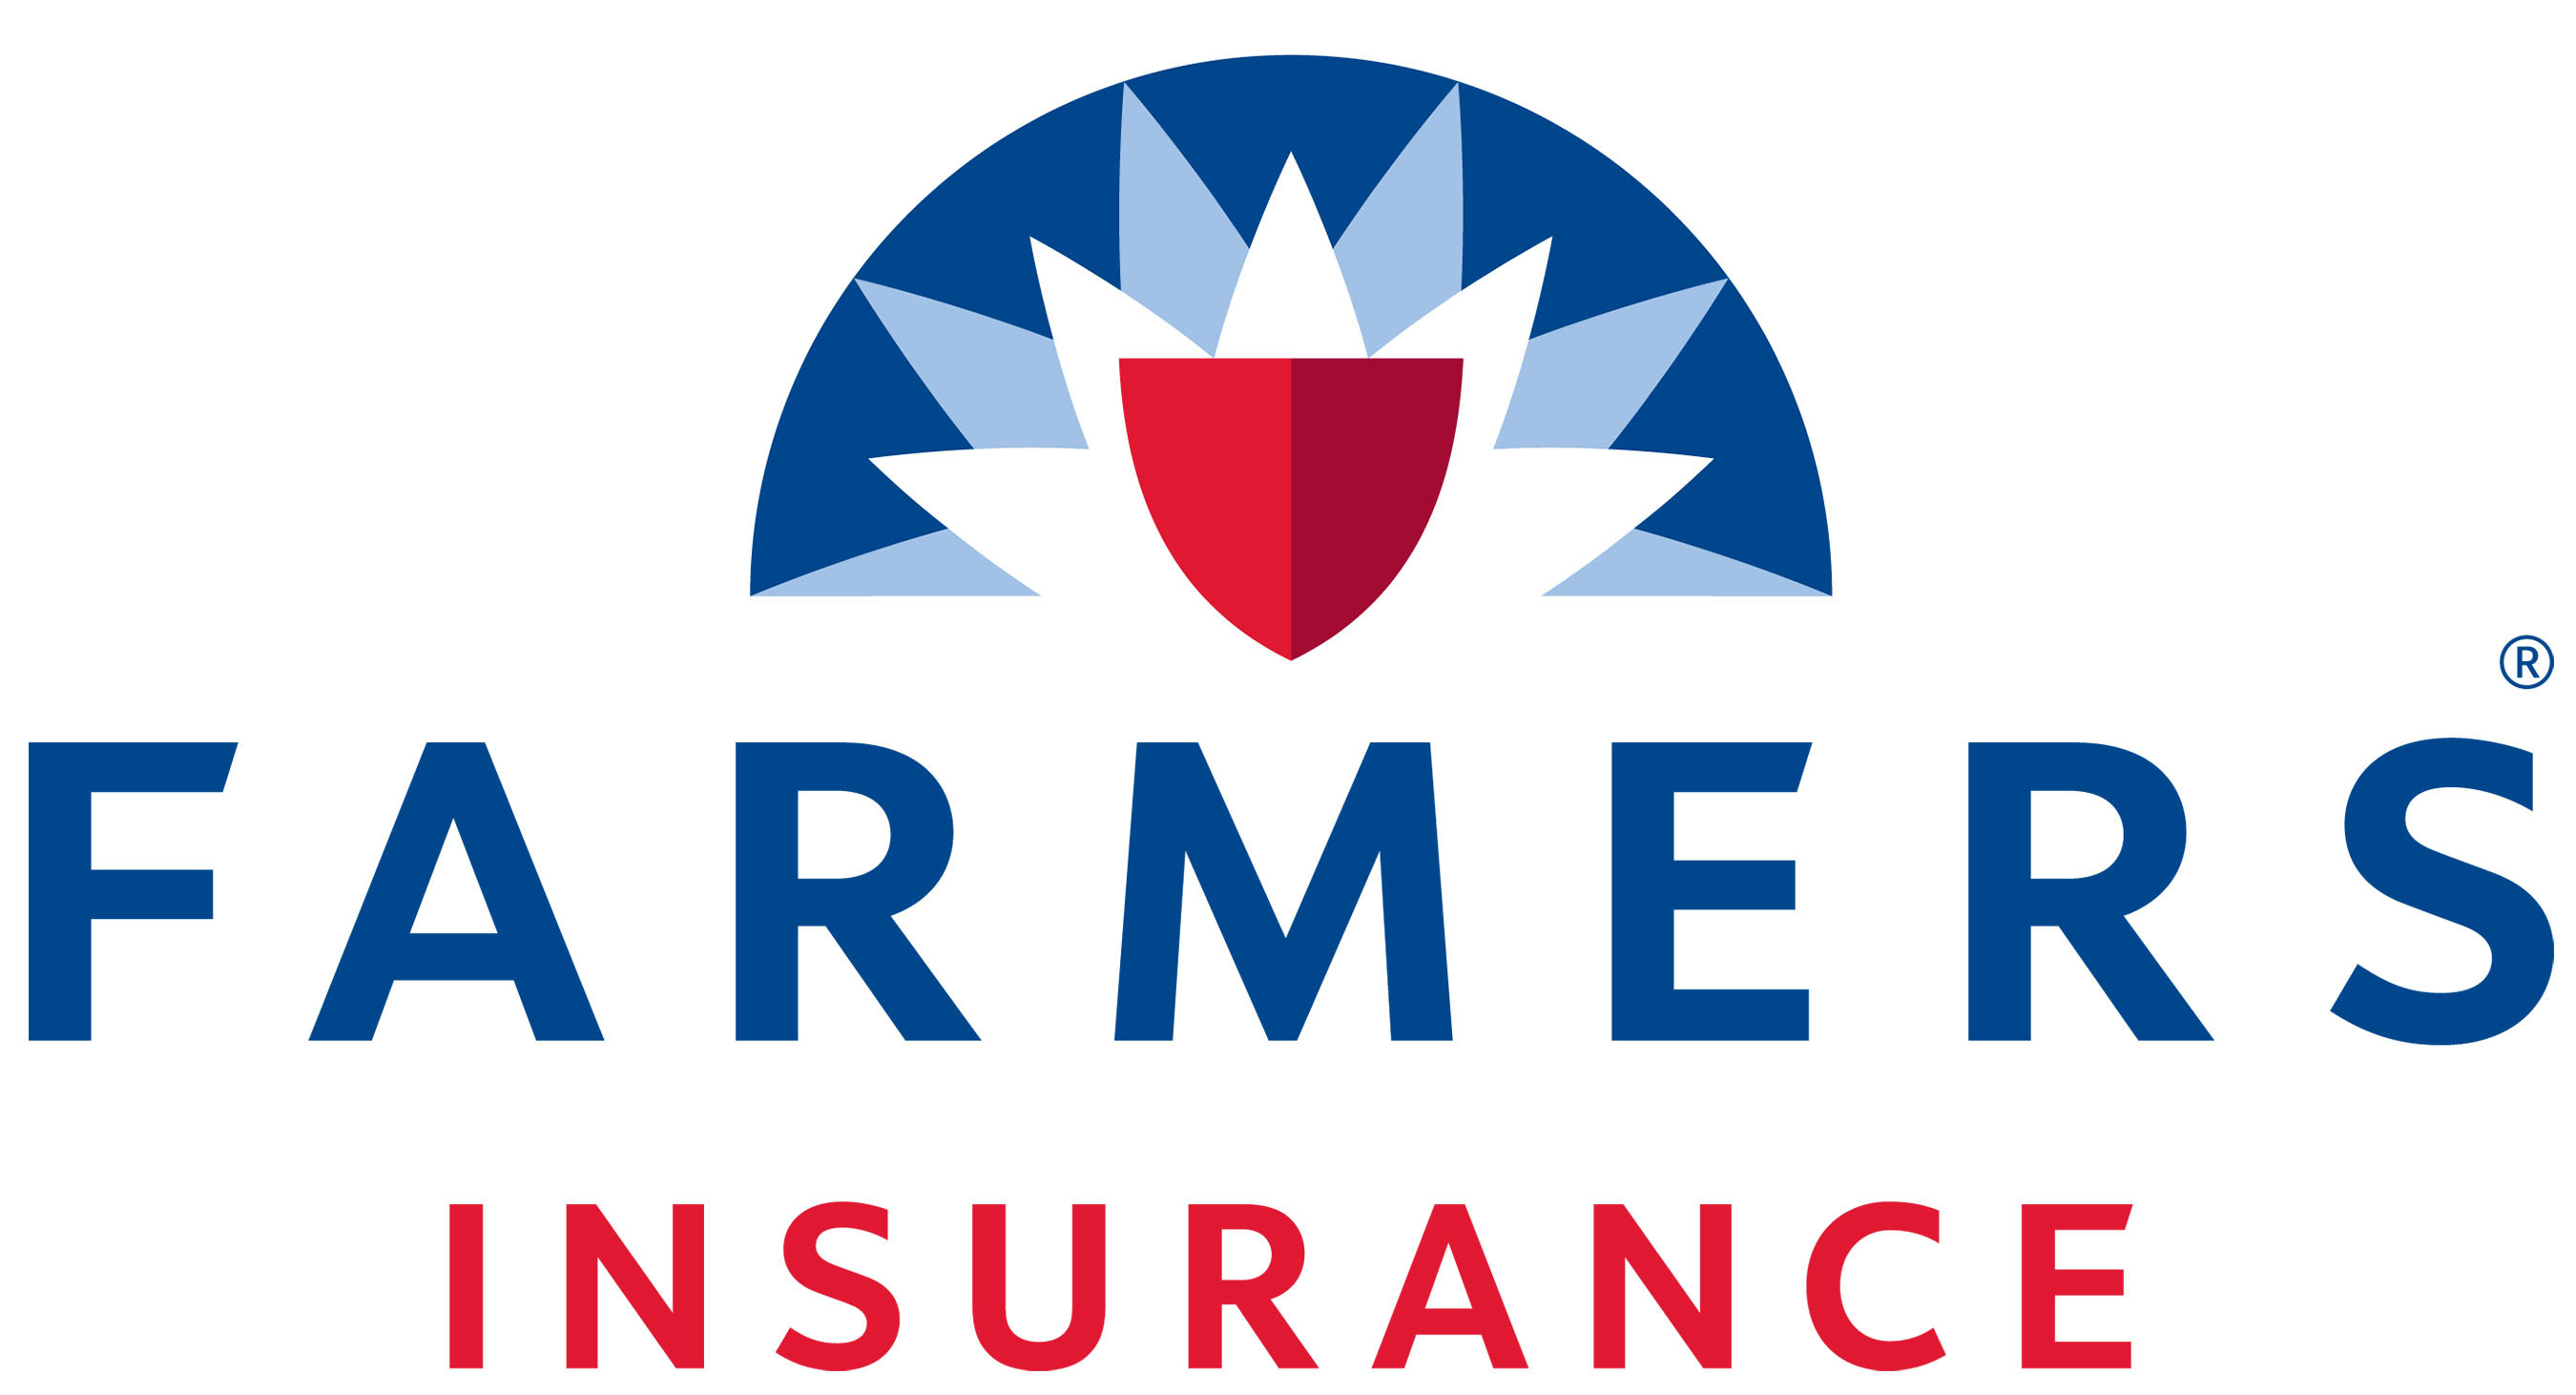 Farmers Insurance Logo. (PRNewsFoto/Farmers Insurance) (PRNewsFoto/)